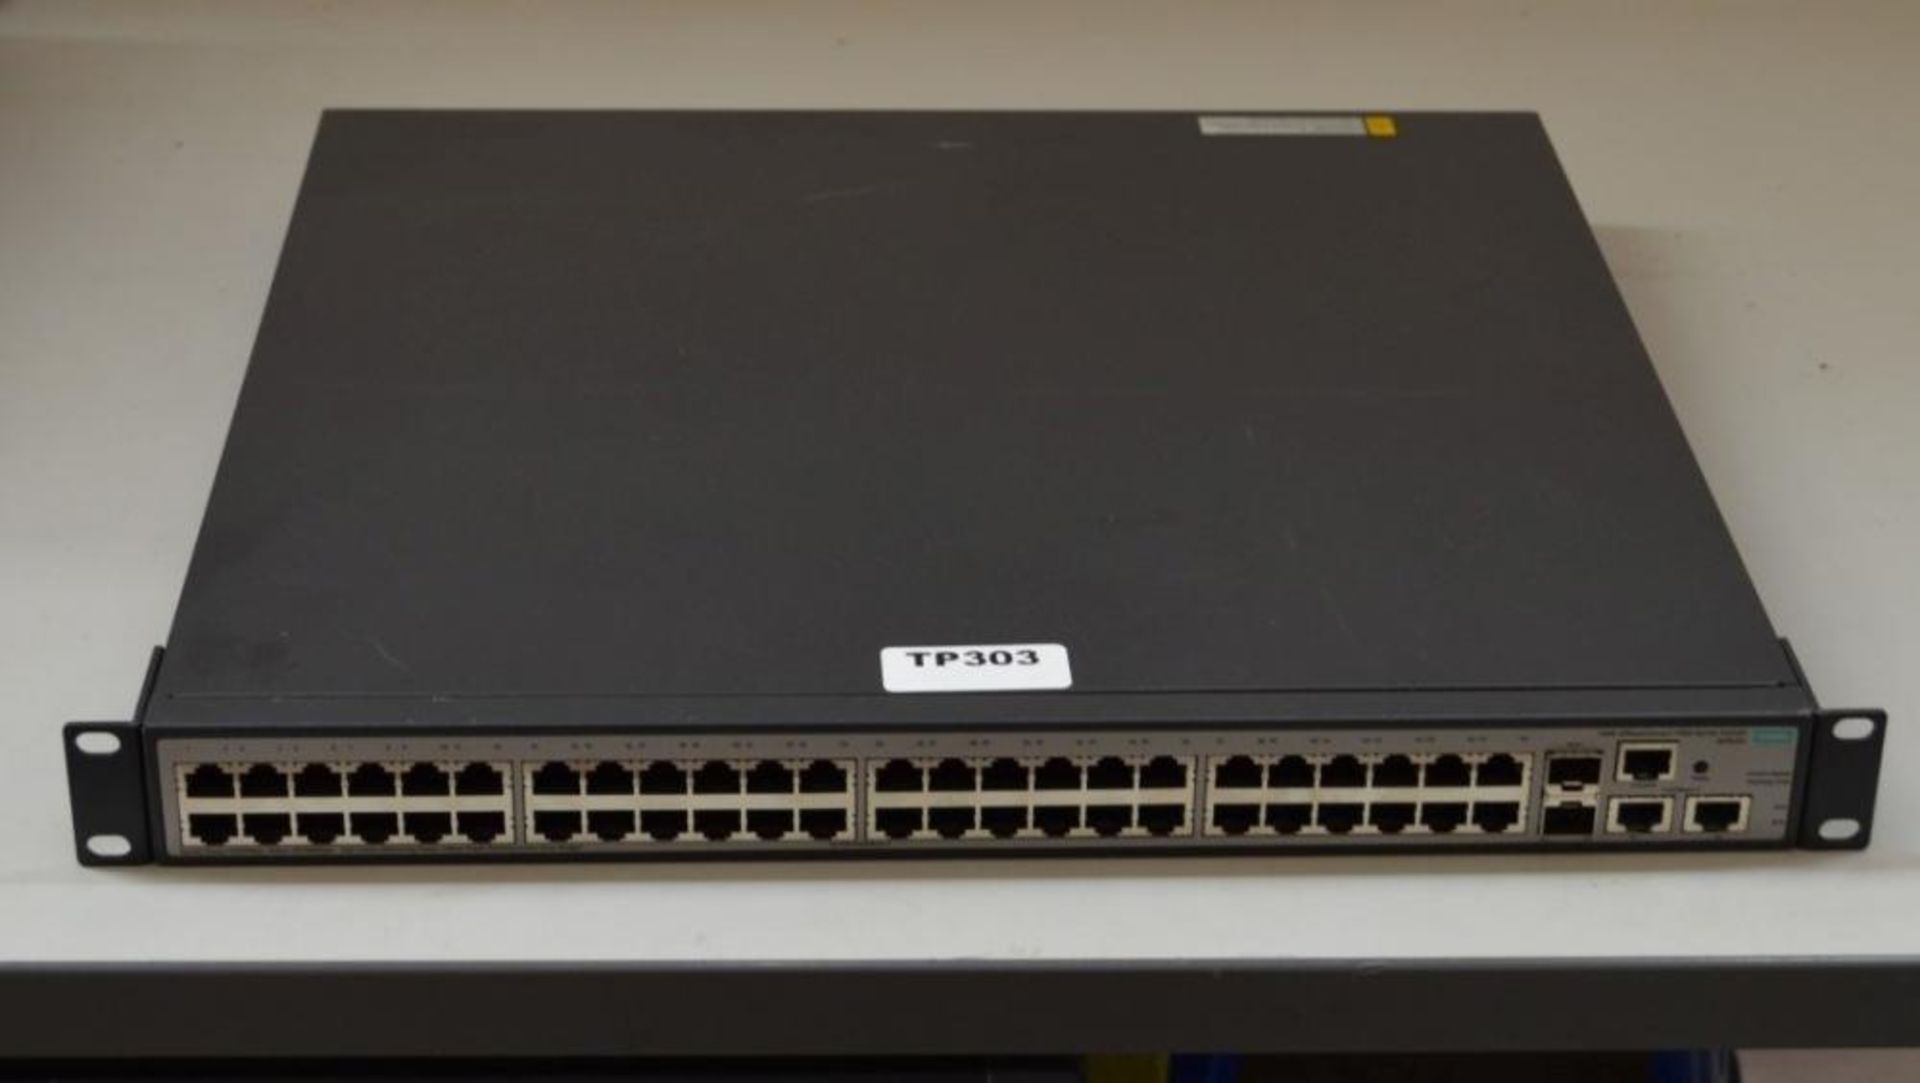 1 x Hewlett Packard Enterprise JG963A Switches HPE 1950-48G-2SFP+-2XGT-PoE+ - Ref TP303 - CL394 - L